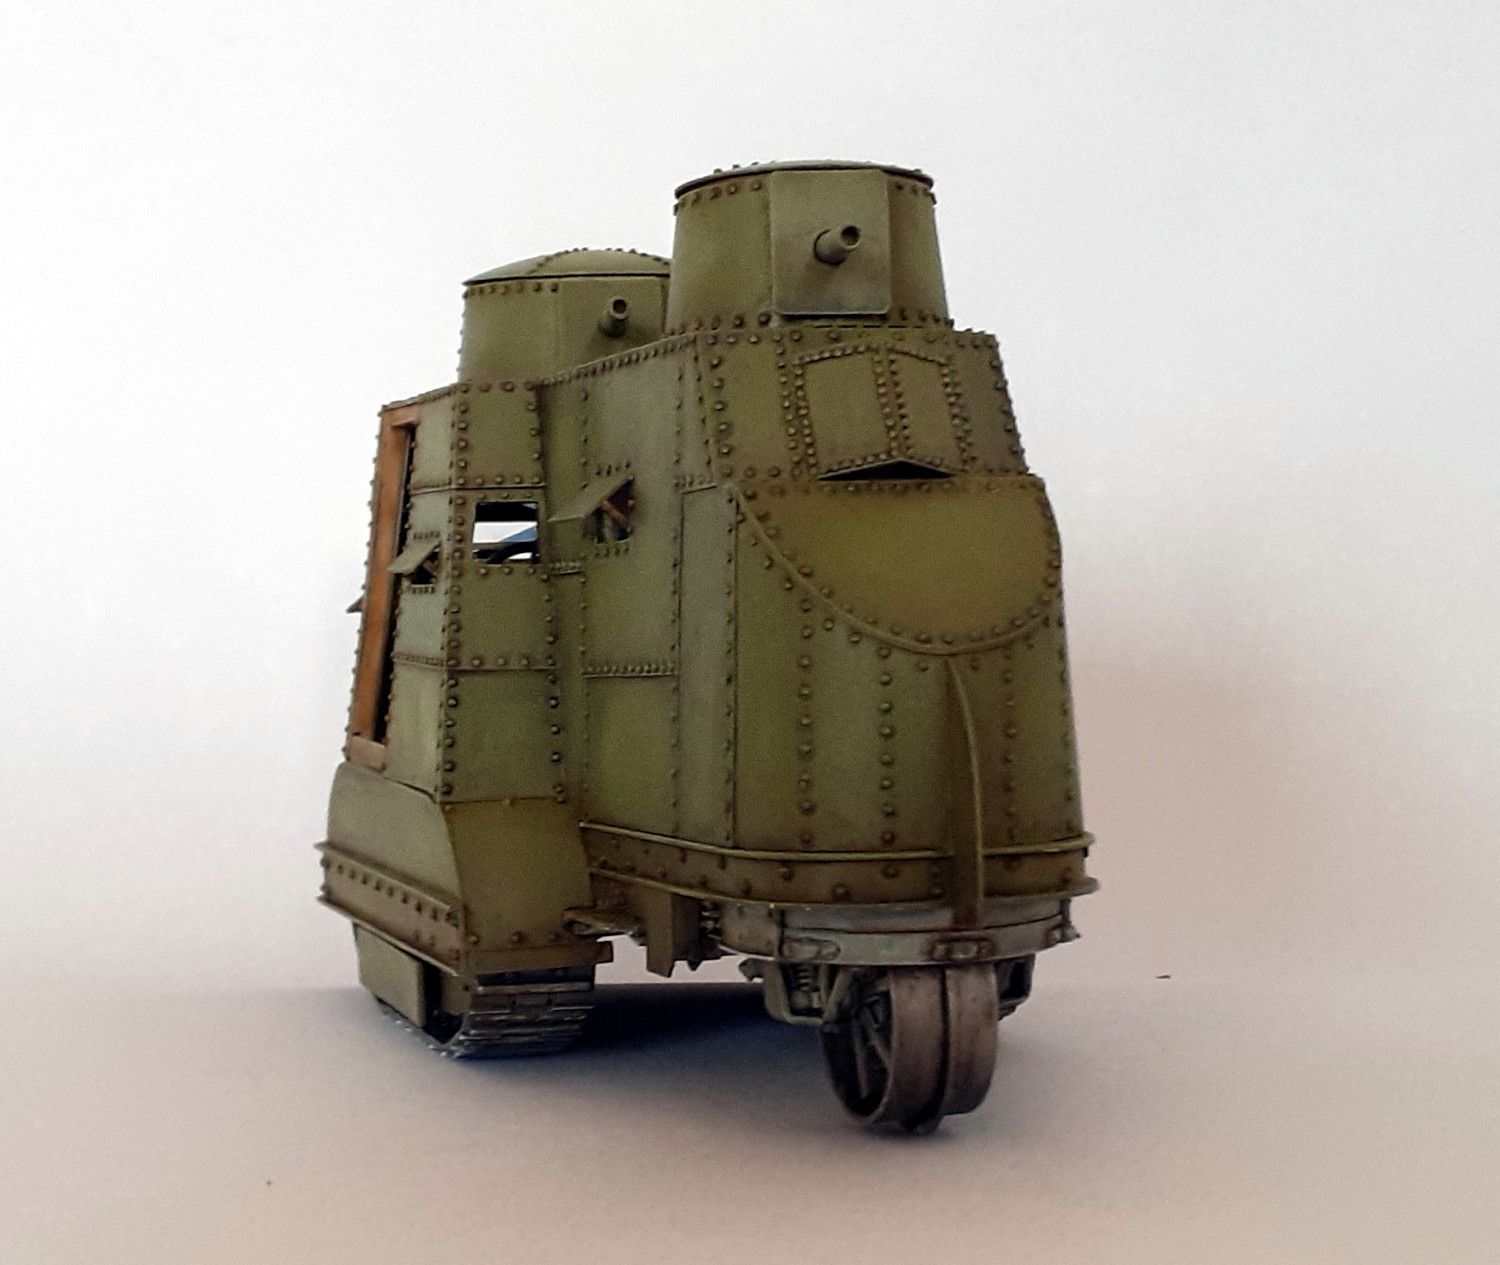 Caterpillar G9 : 1er tank US de l'Histoire [base tracteur Holt Roden + scratch] de Lostiznaos 663be0ef9d853